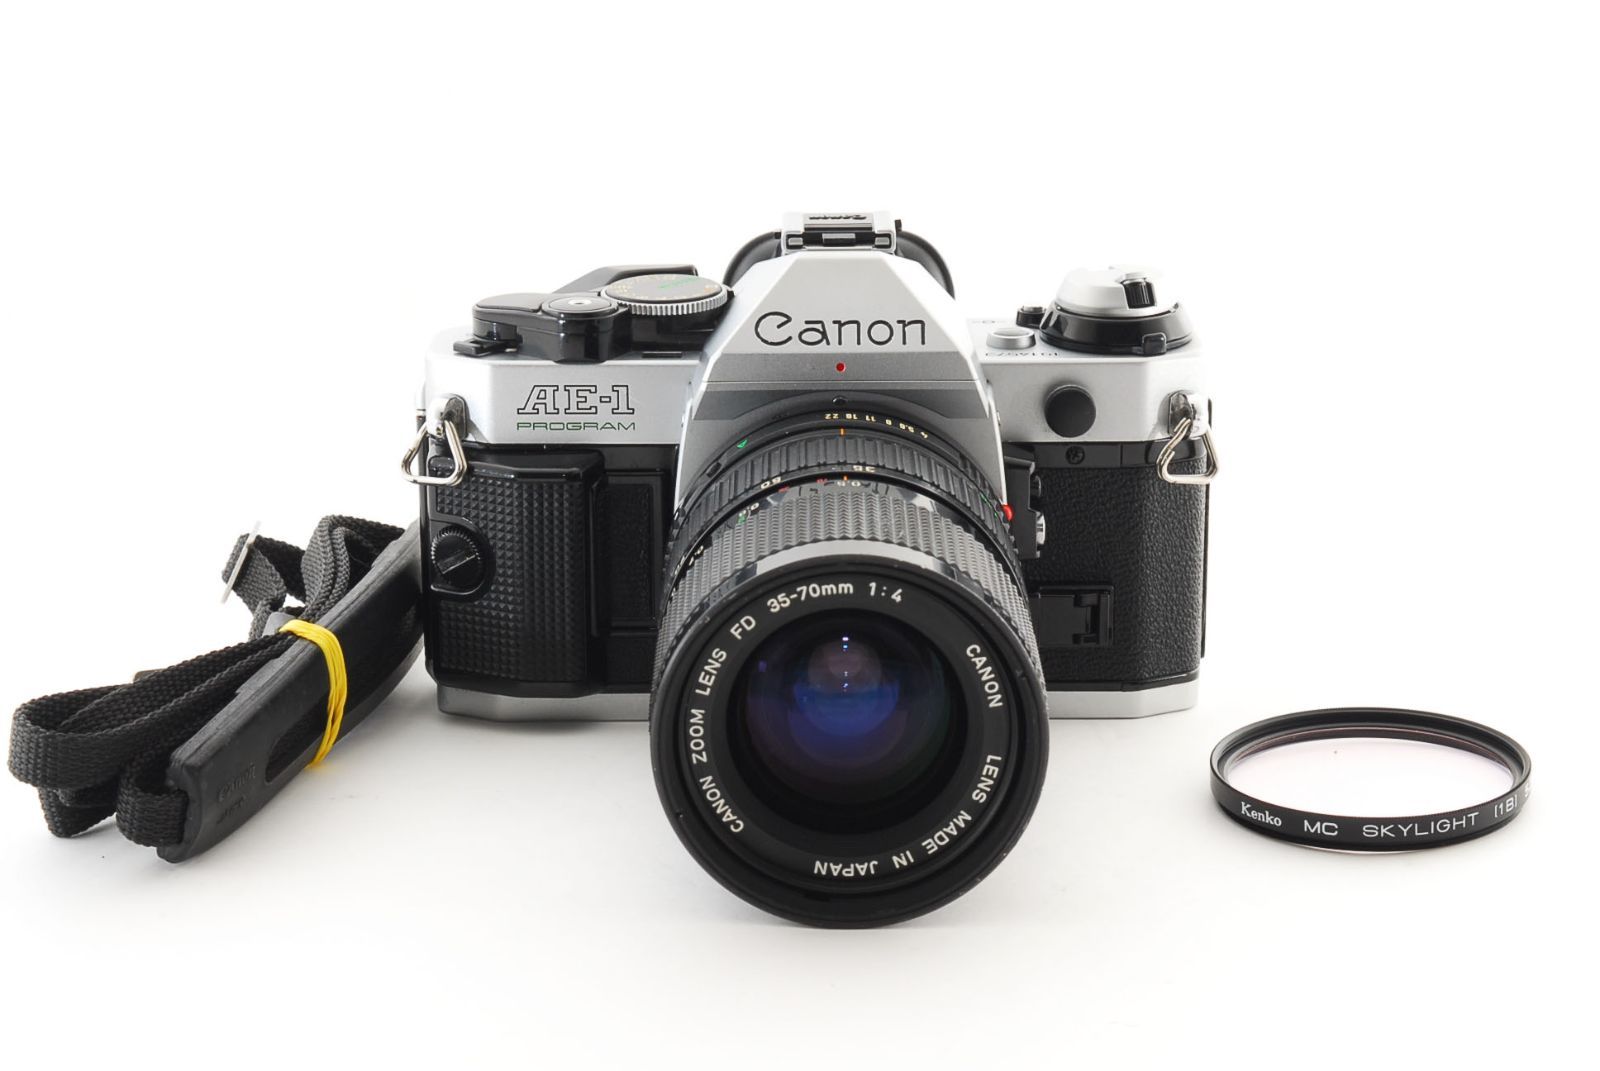 レンズテスト済 Canon AE-1 PROGRAM Siver New FD 35-70mm f4 キャノンズームレンズ  #386-03183301508